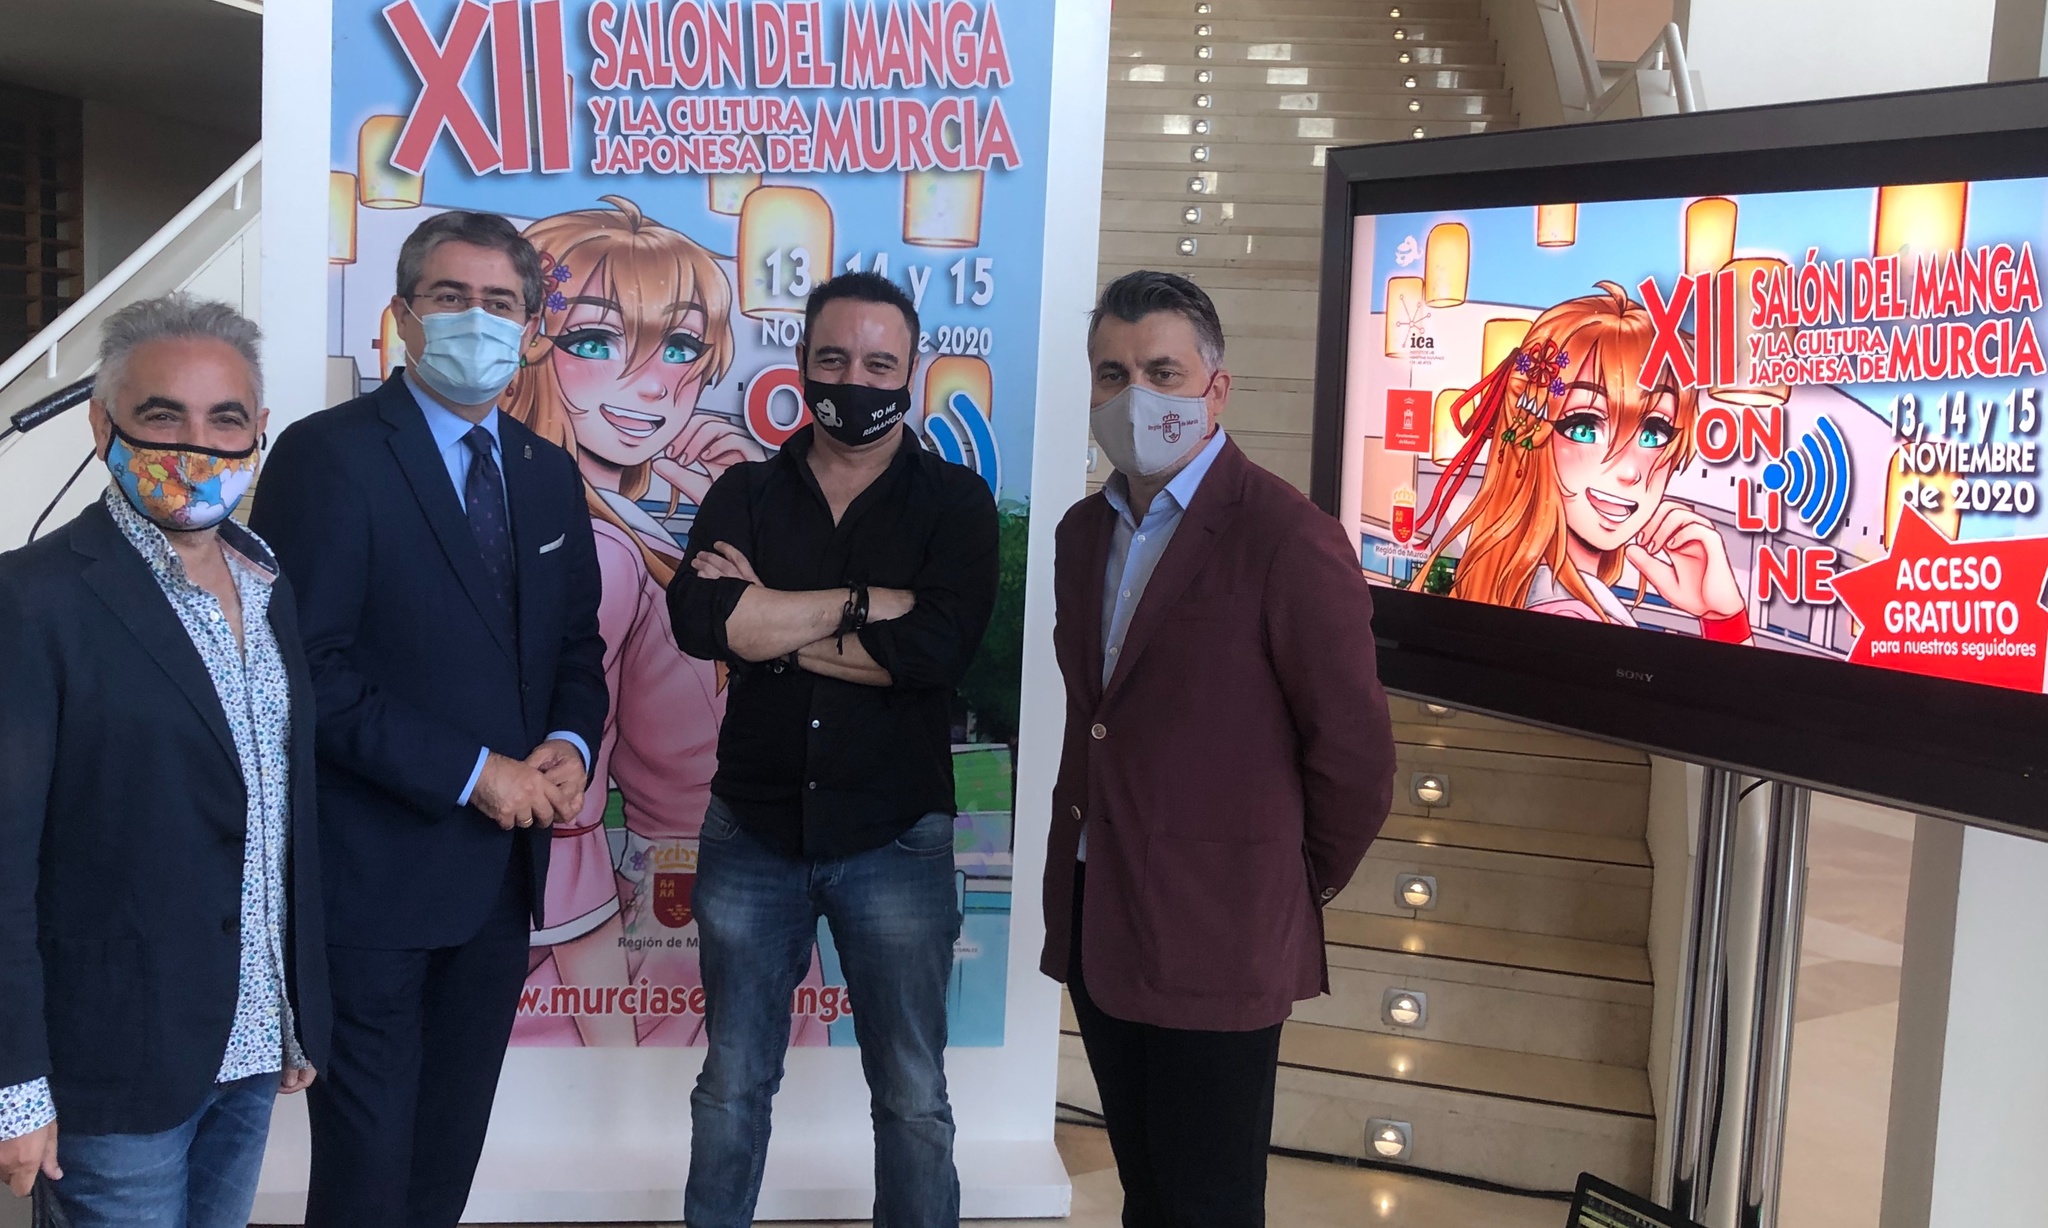 Presentación del XII Salón de Manga y la Cultura Japonesa de Murcia que será online y gratuito